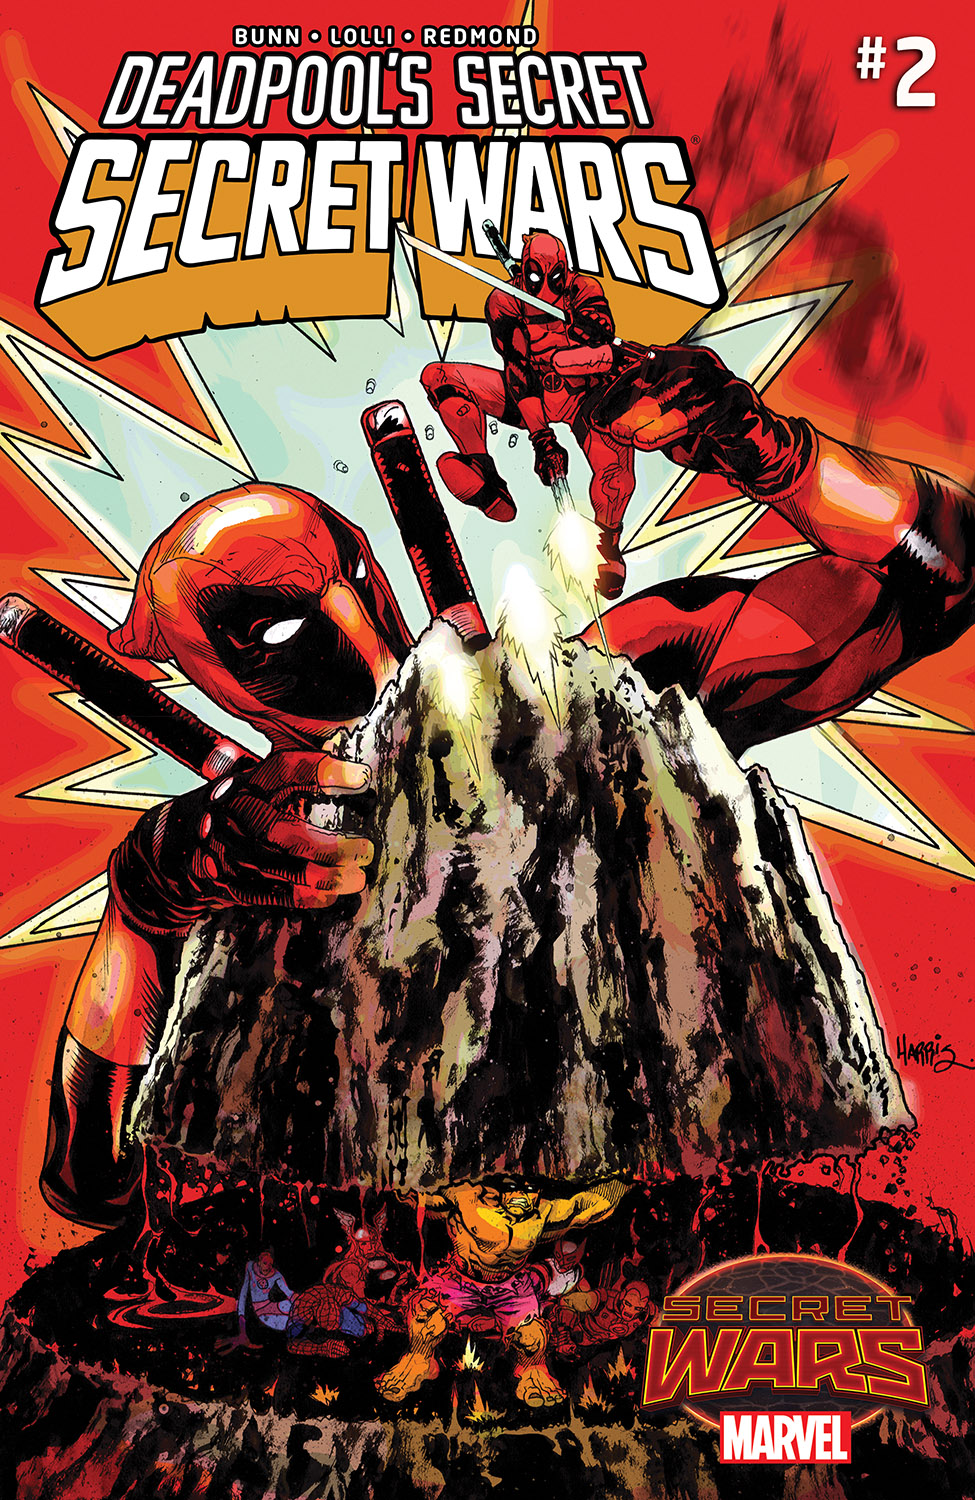 Deadpool's secret secret wars #2